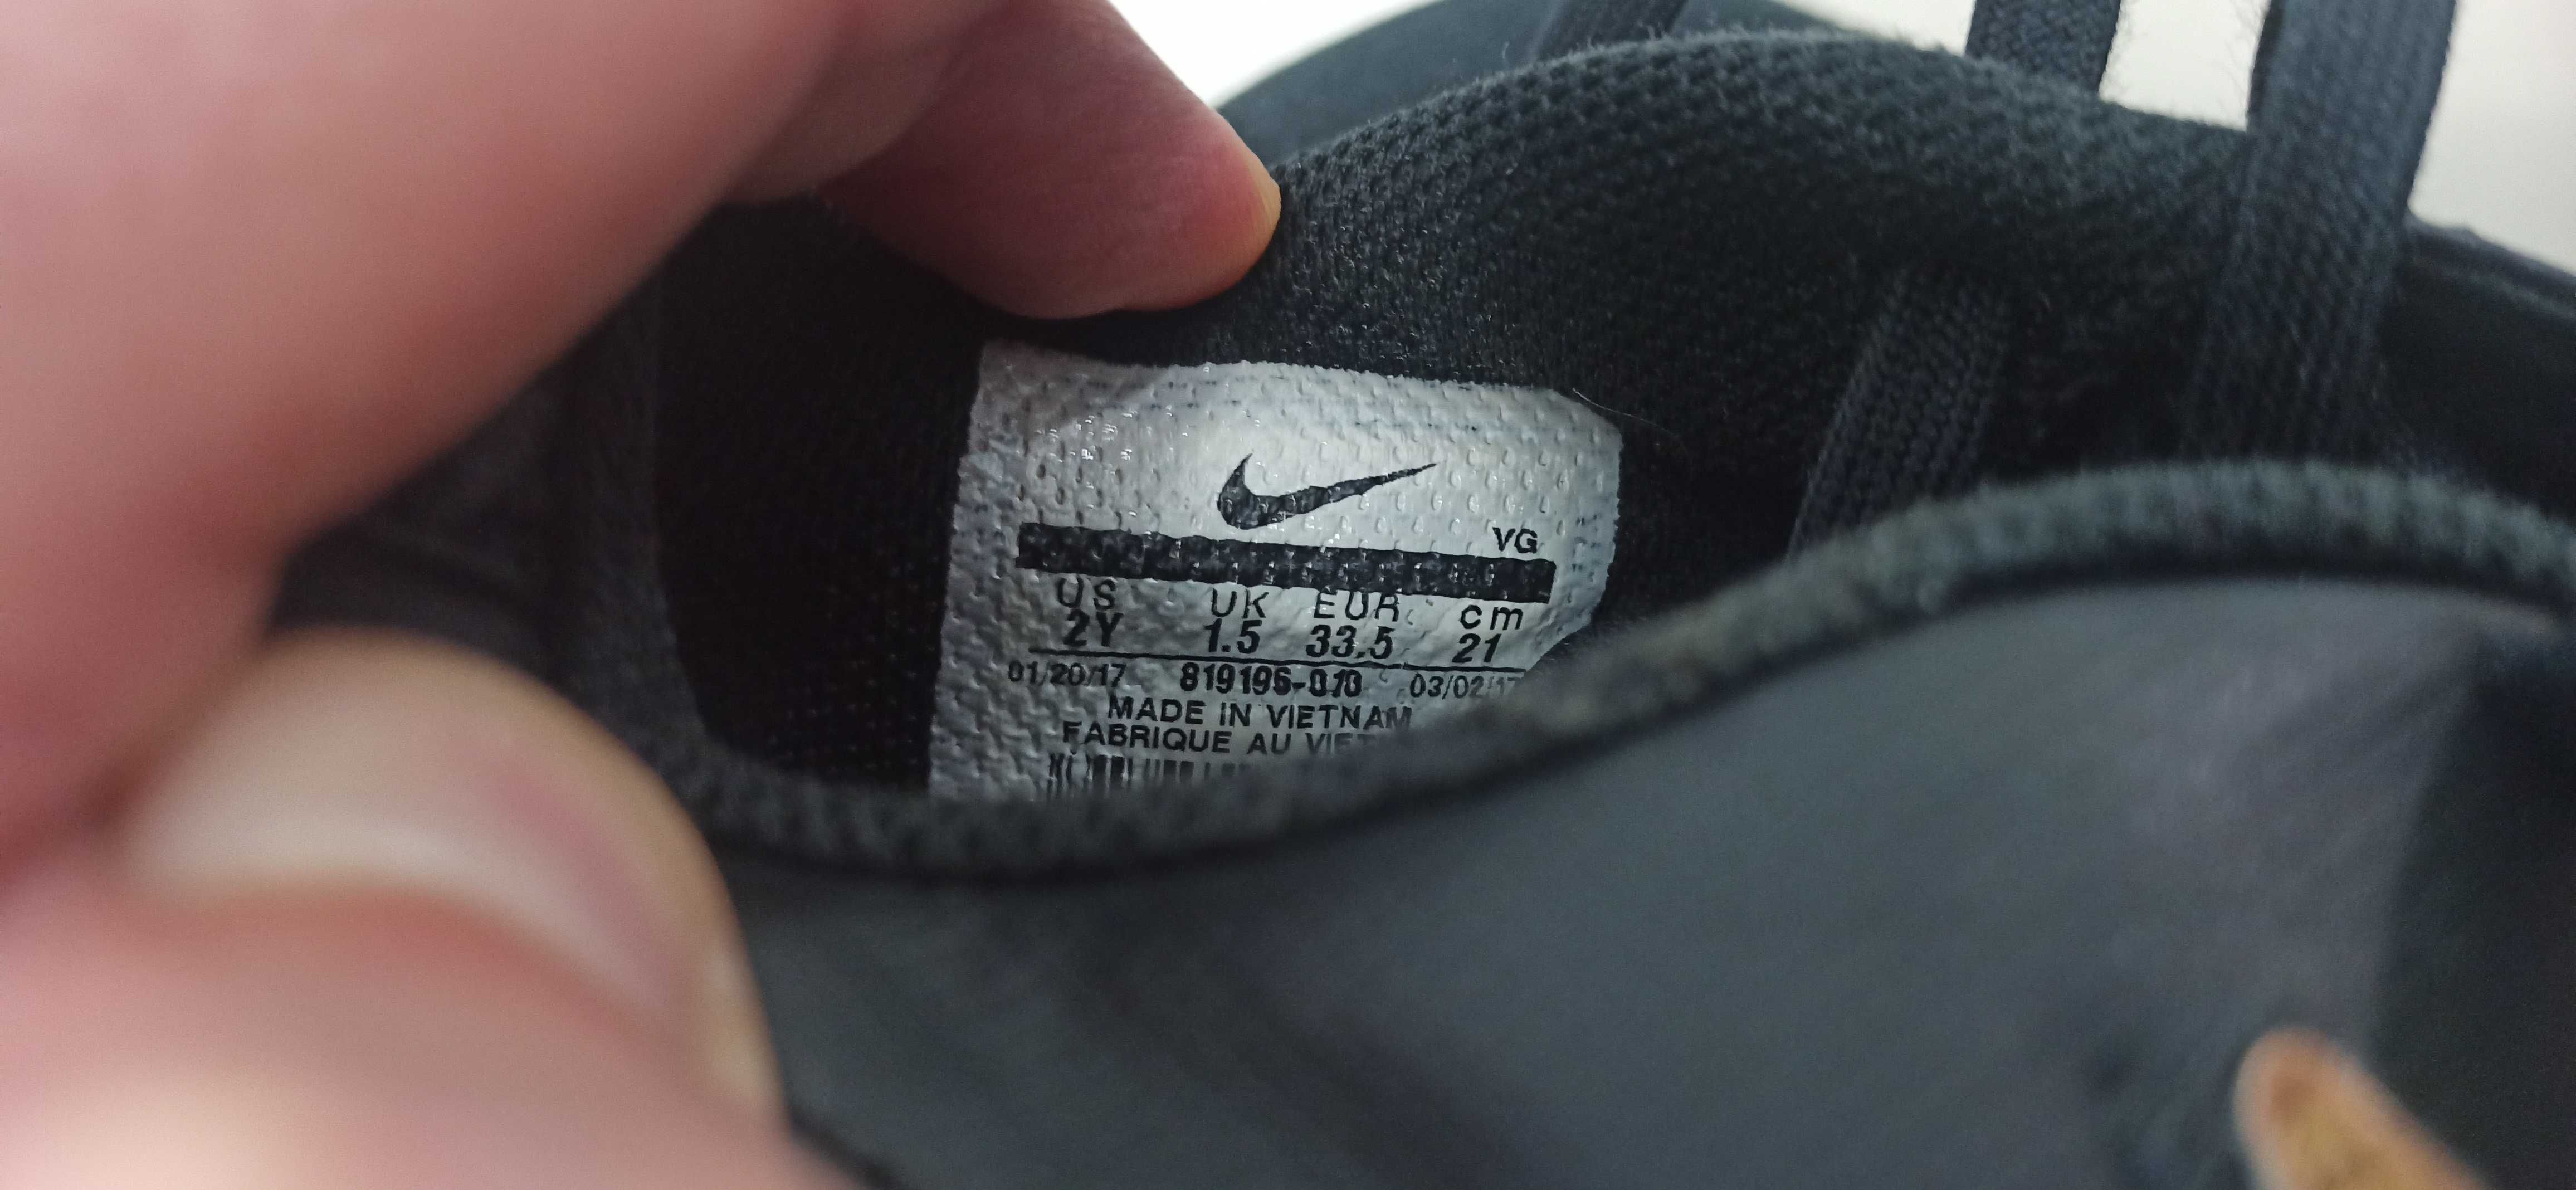 Buty Nike halówki 33,5